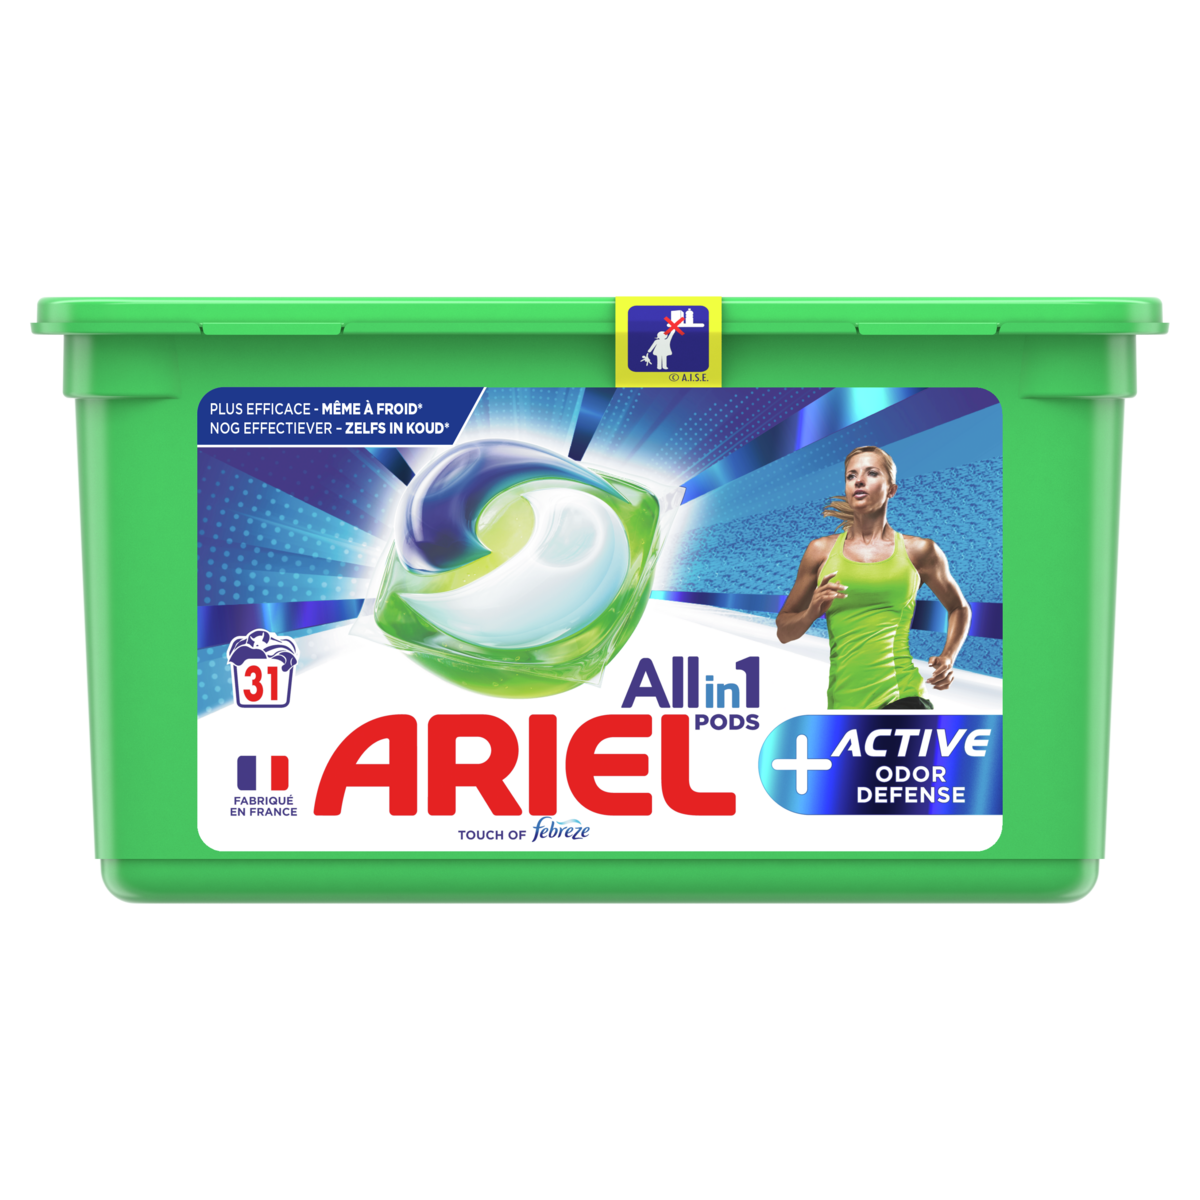 ARIEL Pods capsules de lessive tout en 1 + active 31 lavages 31 capsules